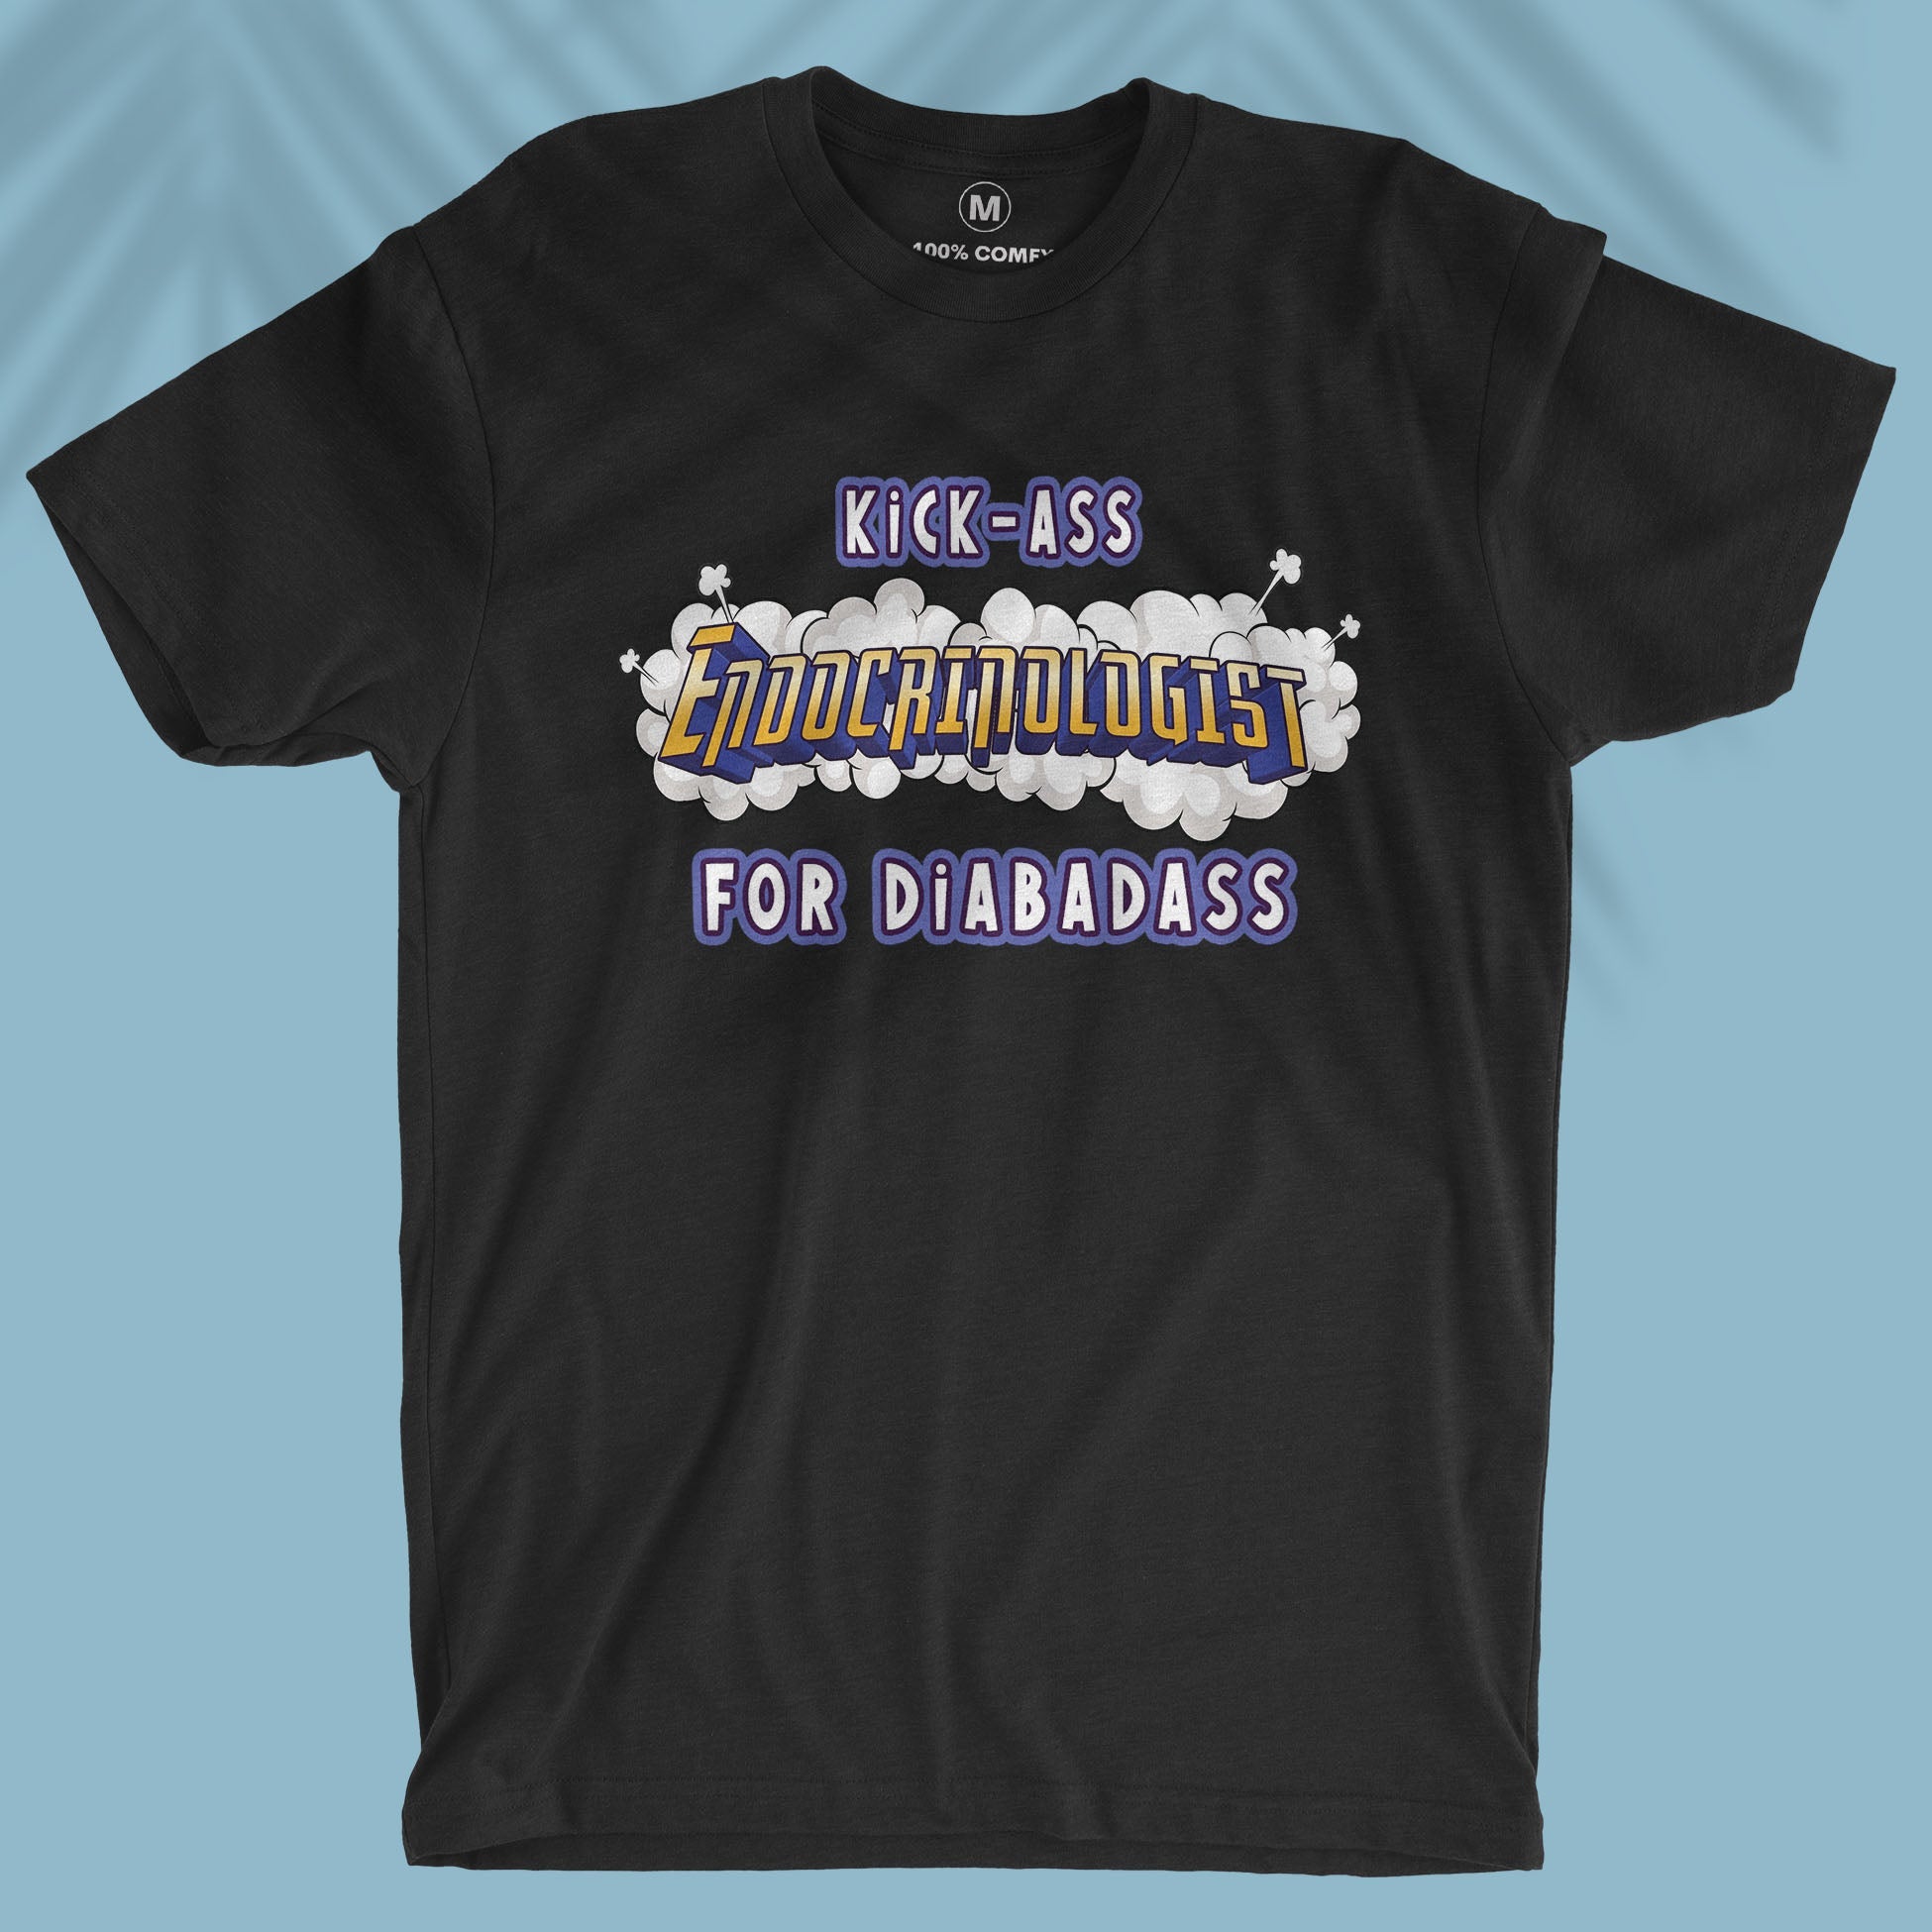 Kick-ass Diabetes Specialist - Unisex T-shirt